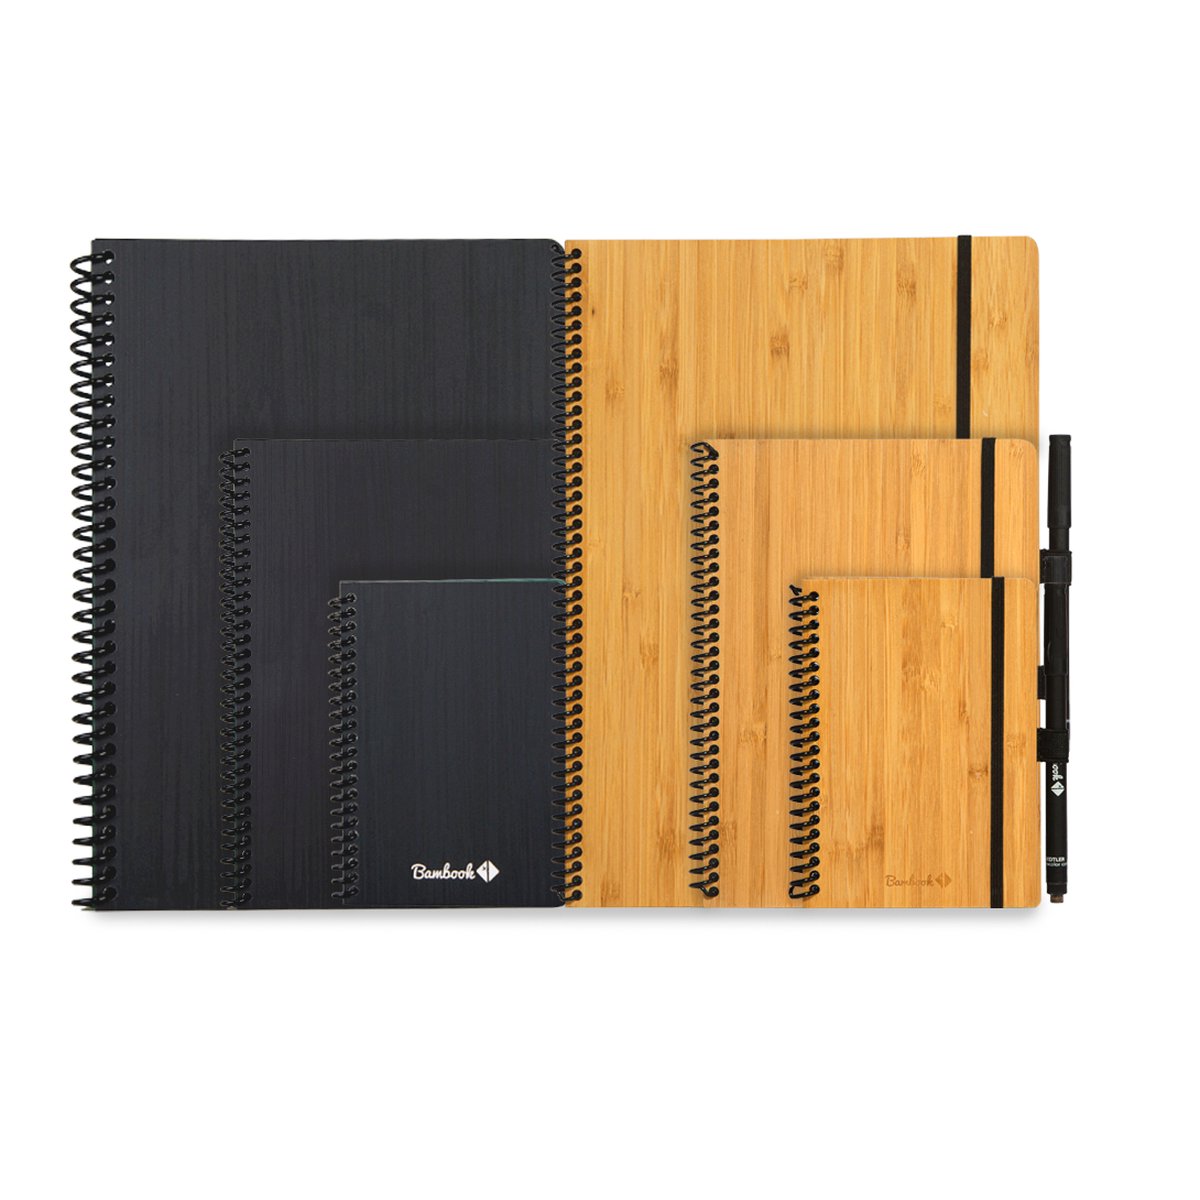 Bambook Hardcover löschbares Notizbuch A5 liniert